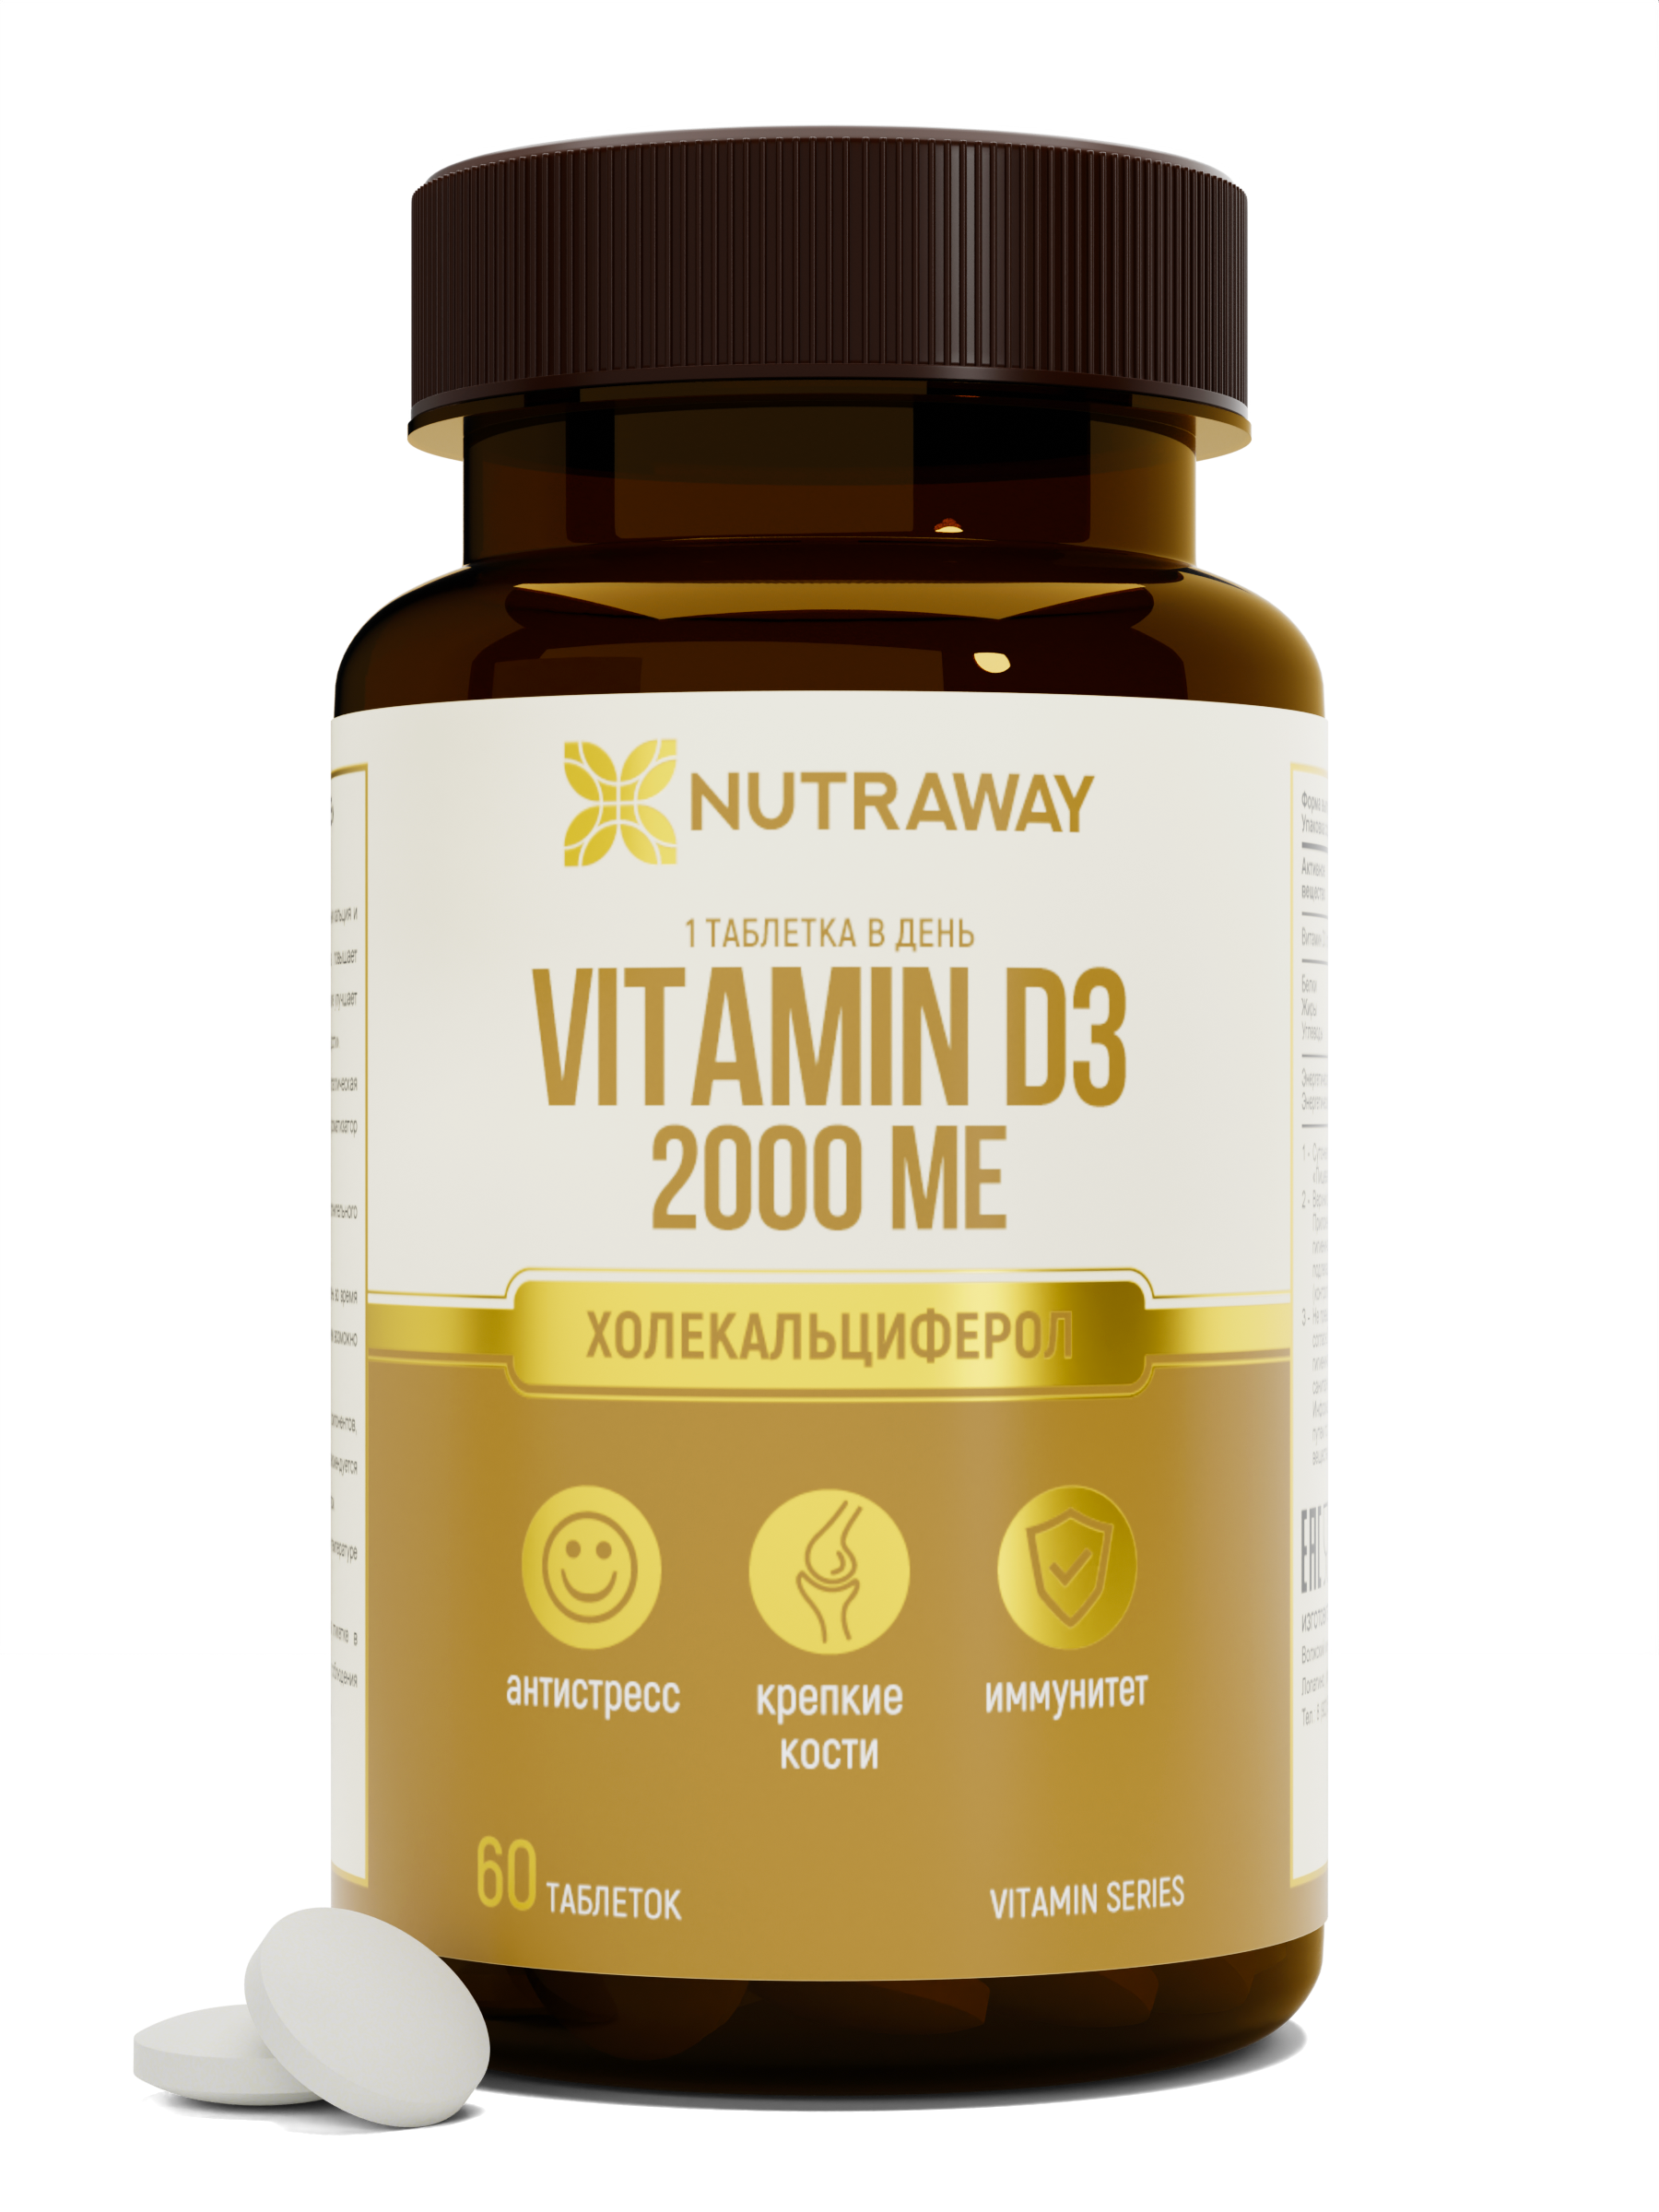 Купить Витамин Д3 NUTRAWAY Vitamin D3 таблетки 2000 ME 60 шт.